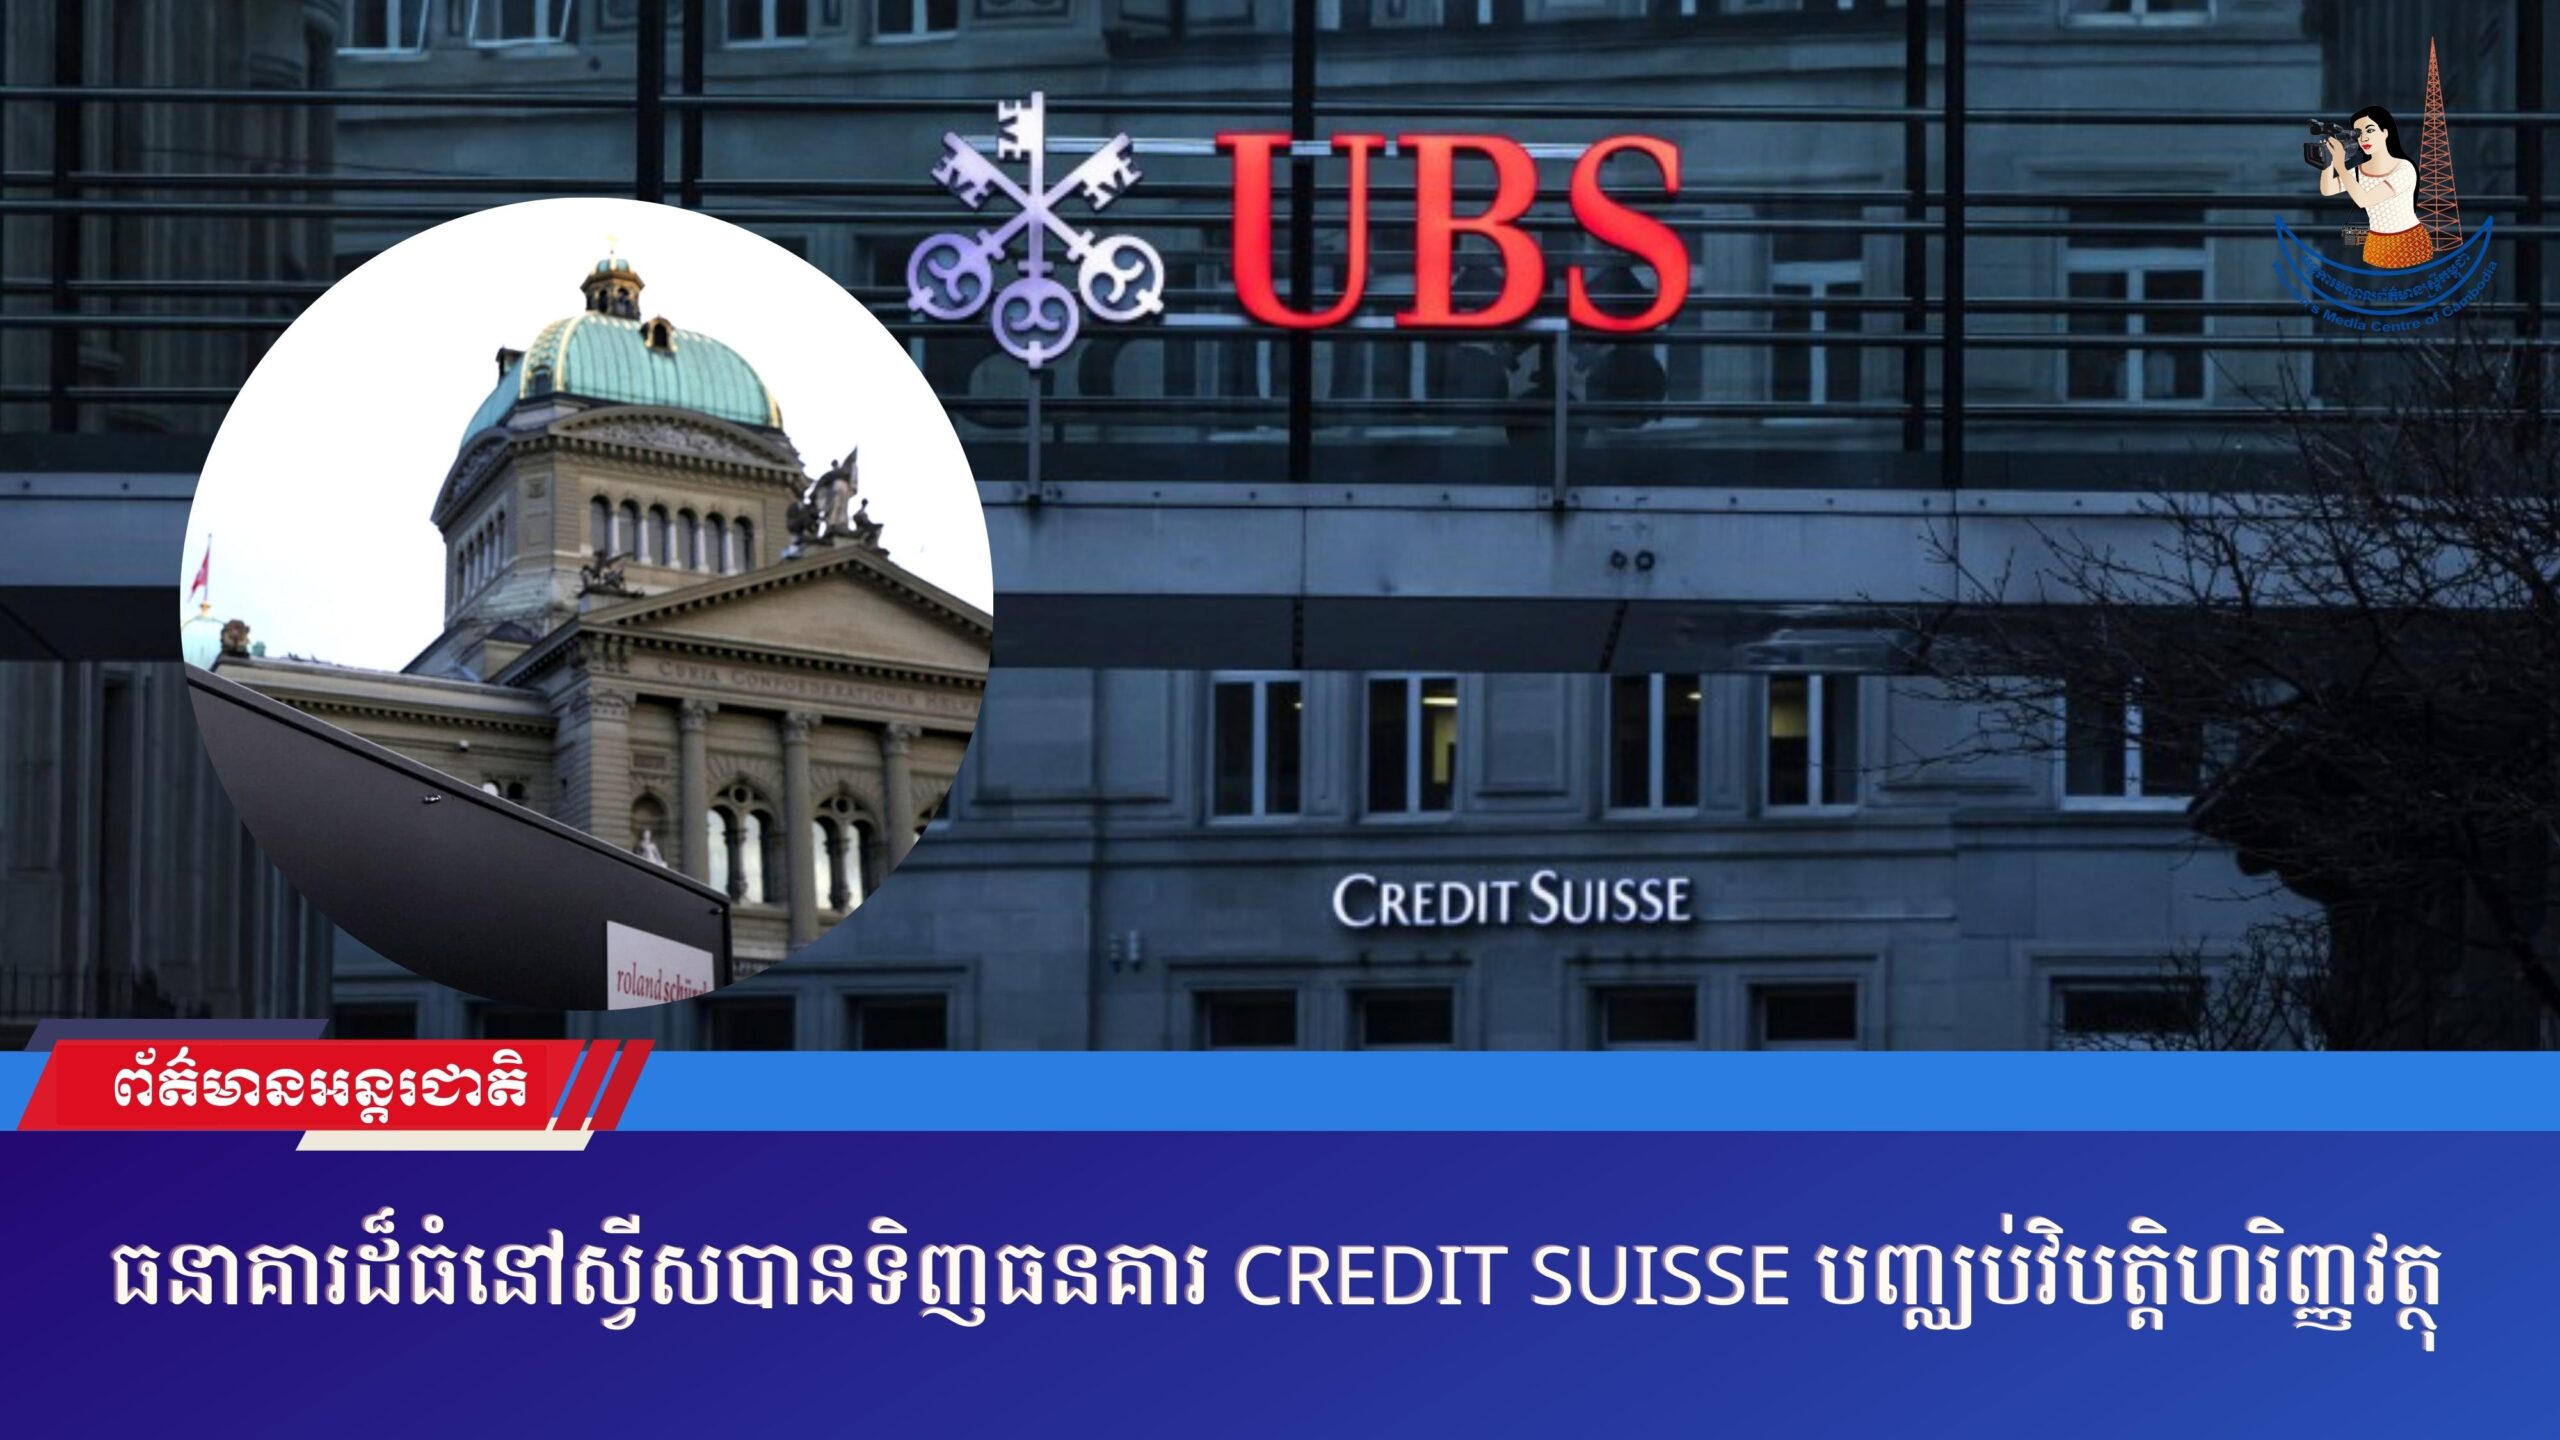 ធនាគារដ៏ធំនៅស្វីសបានទិញធនគារ Credit Suisse បញ្ឈប់វិបត្តិហរិញ្ញវត្ថុ